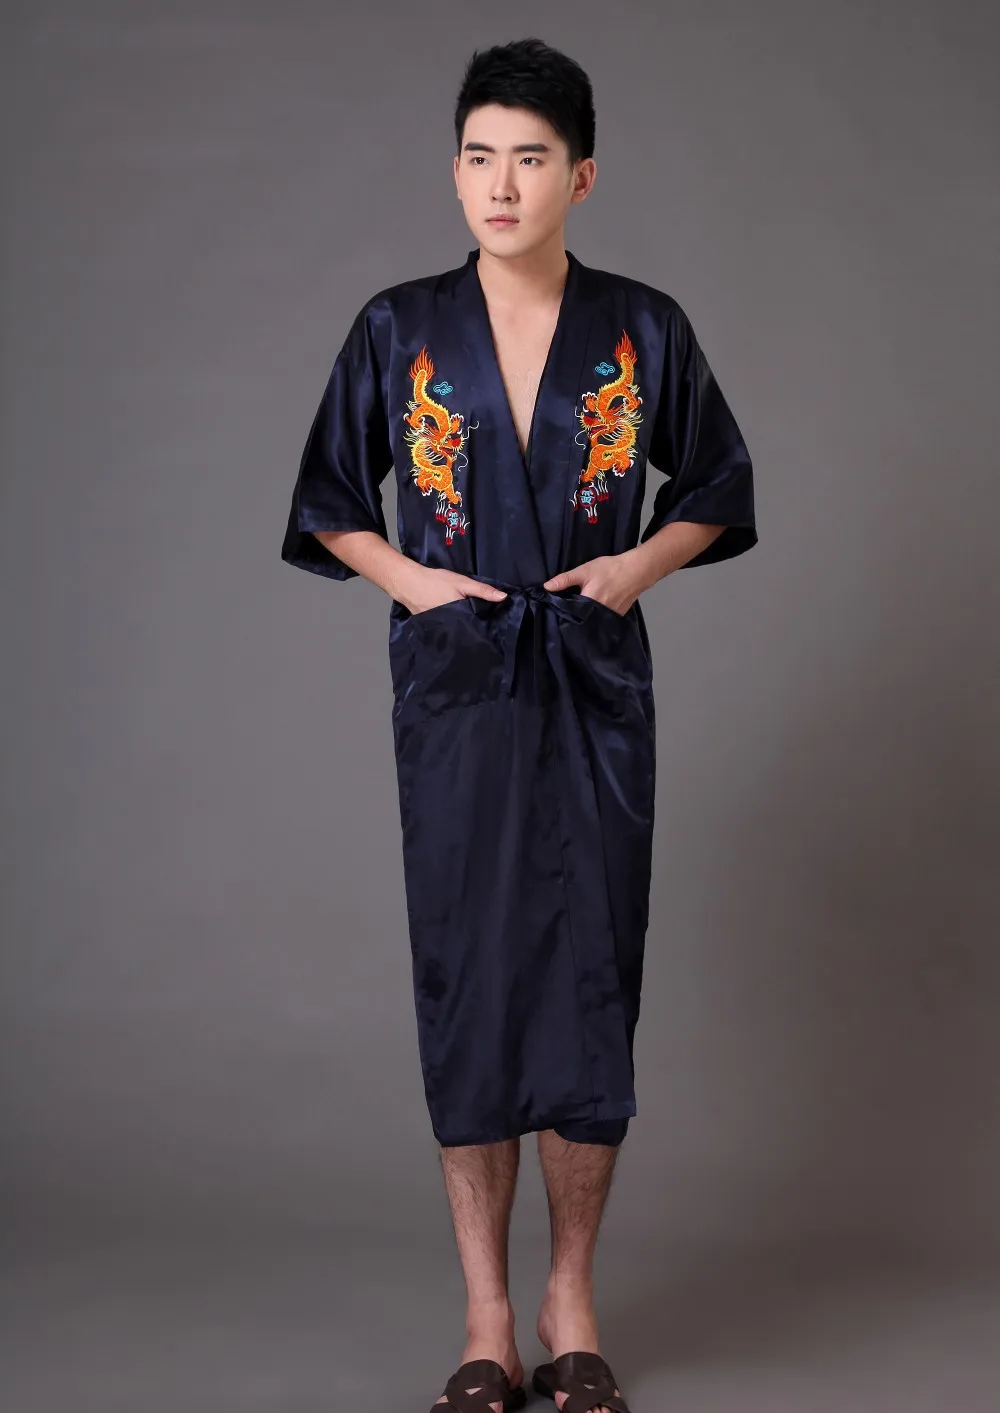 Традиционный китайский Для мужчин халат шелковый атлас пижамы вышивки Дракон кимоно юката Ванна платье Размеры s m l xl XXL, XXXL Z005